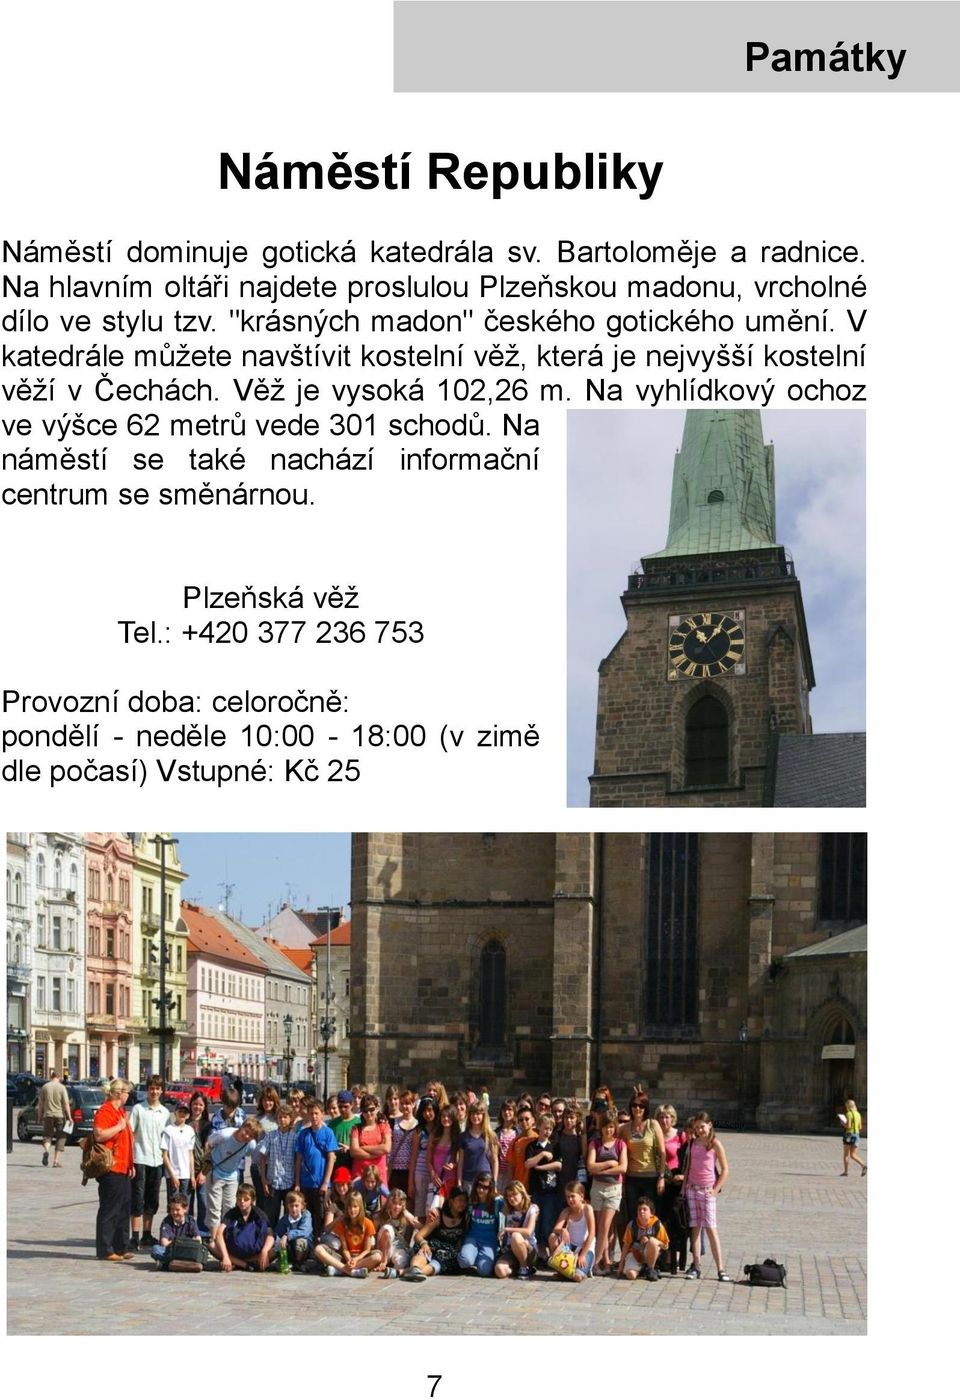 V katedrále můžete navštívit kostelní věž, která je nejvyšší kostelní věží v Čechách. Věž je vysoká 102,26 m.